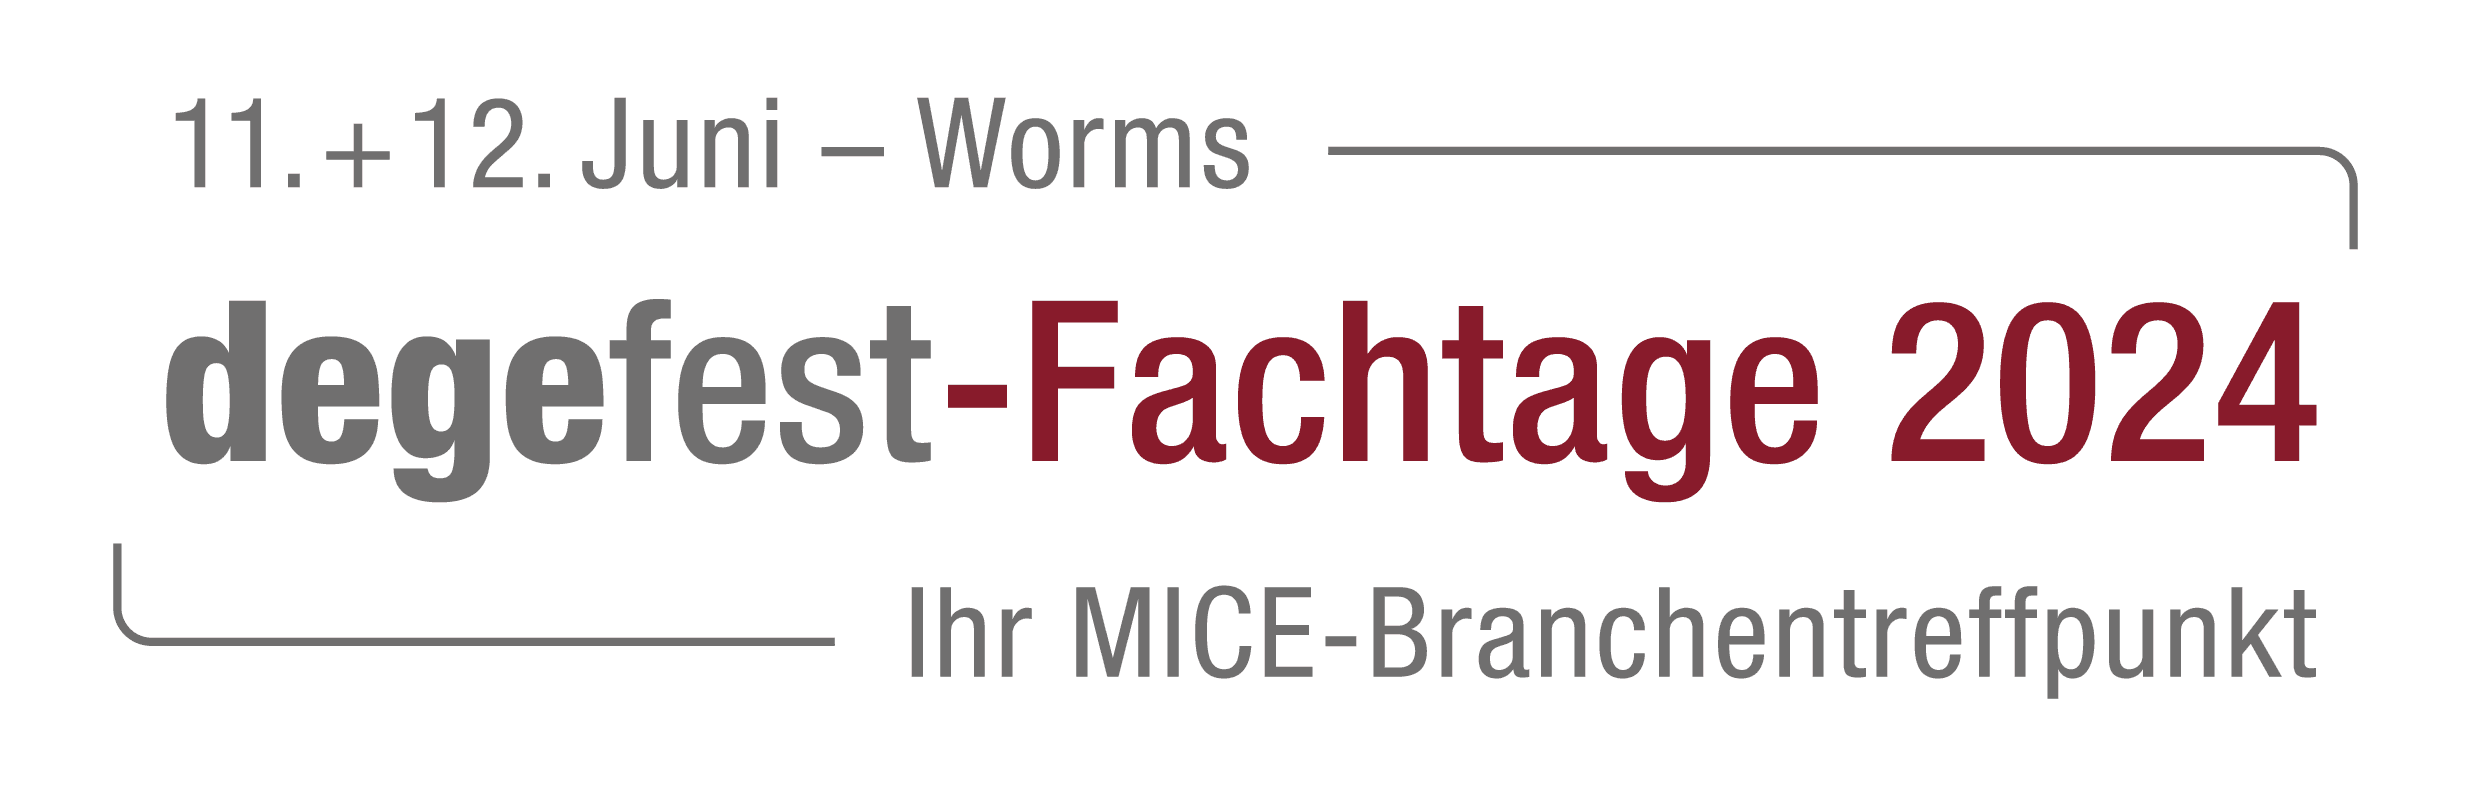 Bild zu degefest-Fachtage 2024: „Der MICE-Branchentreffpunkt in Worms“